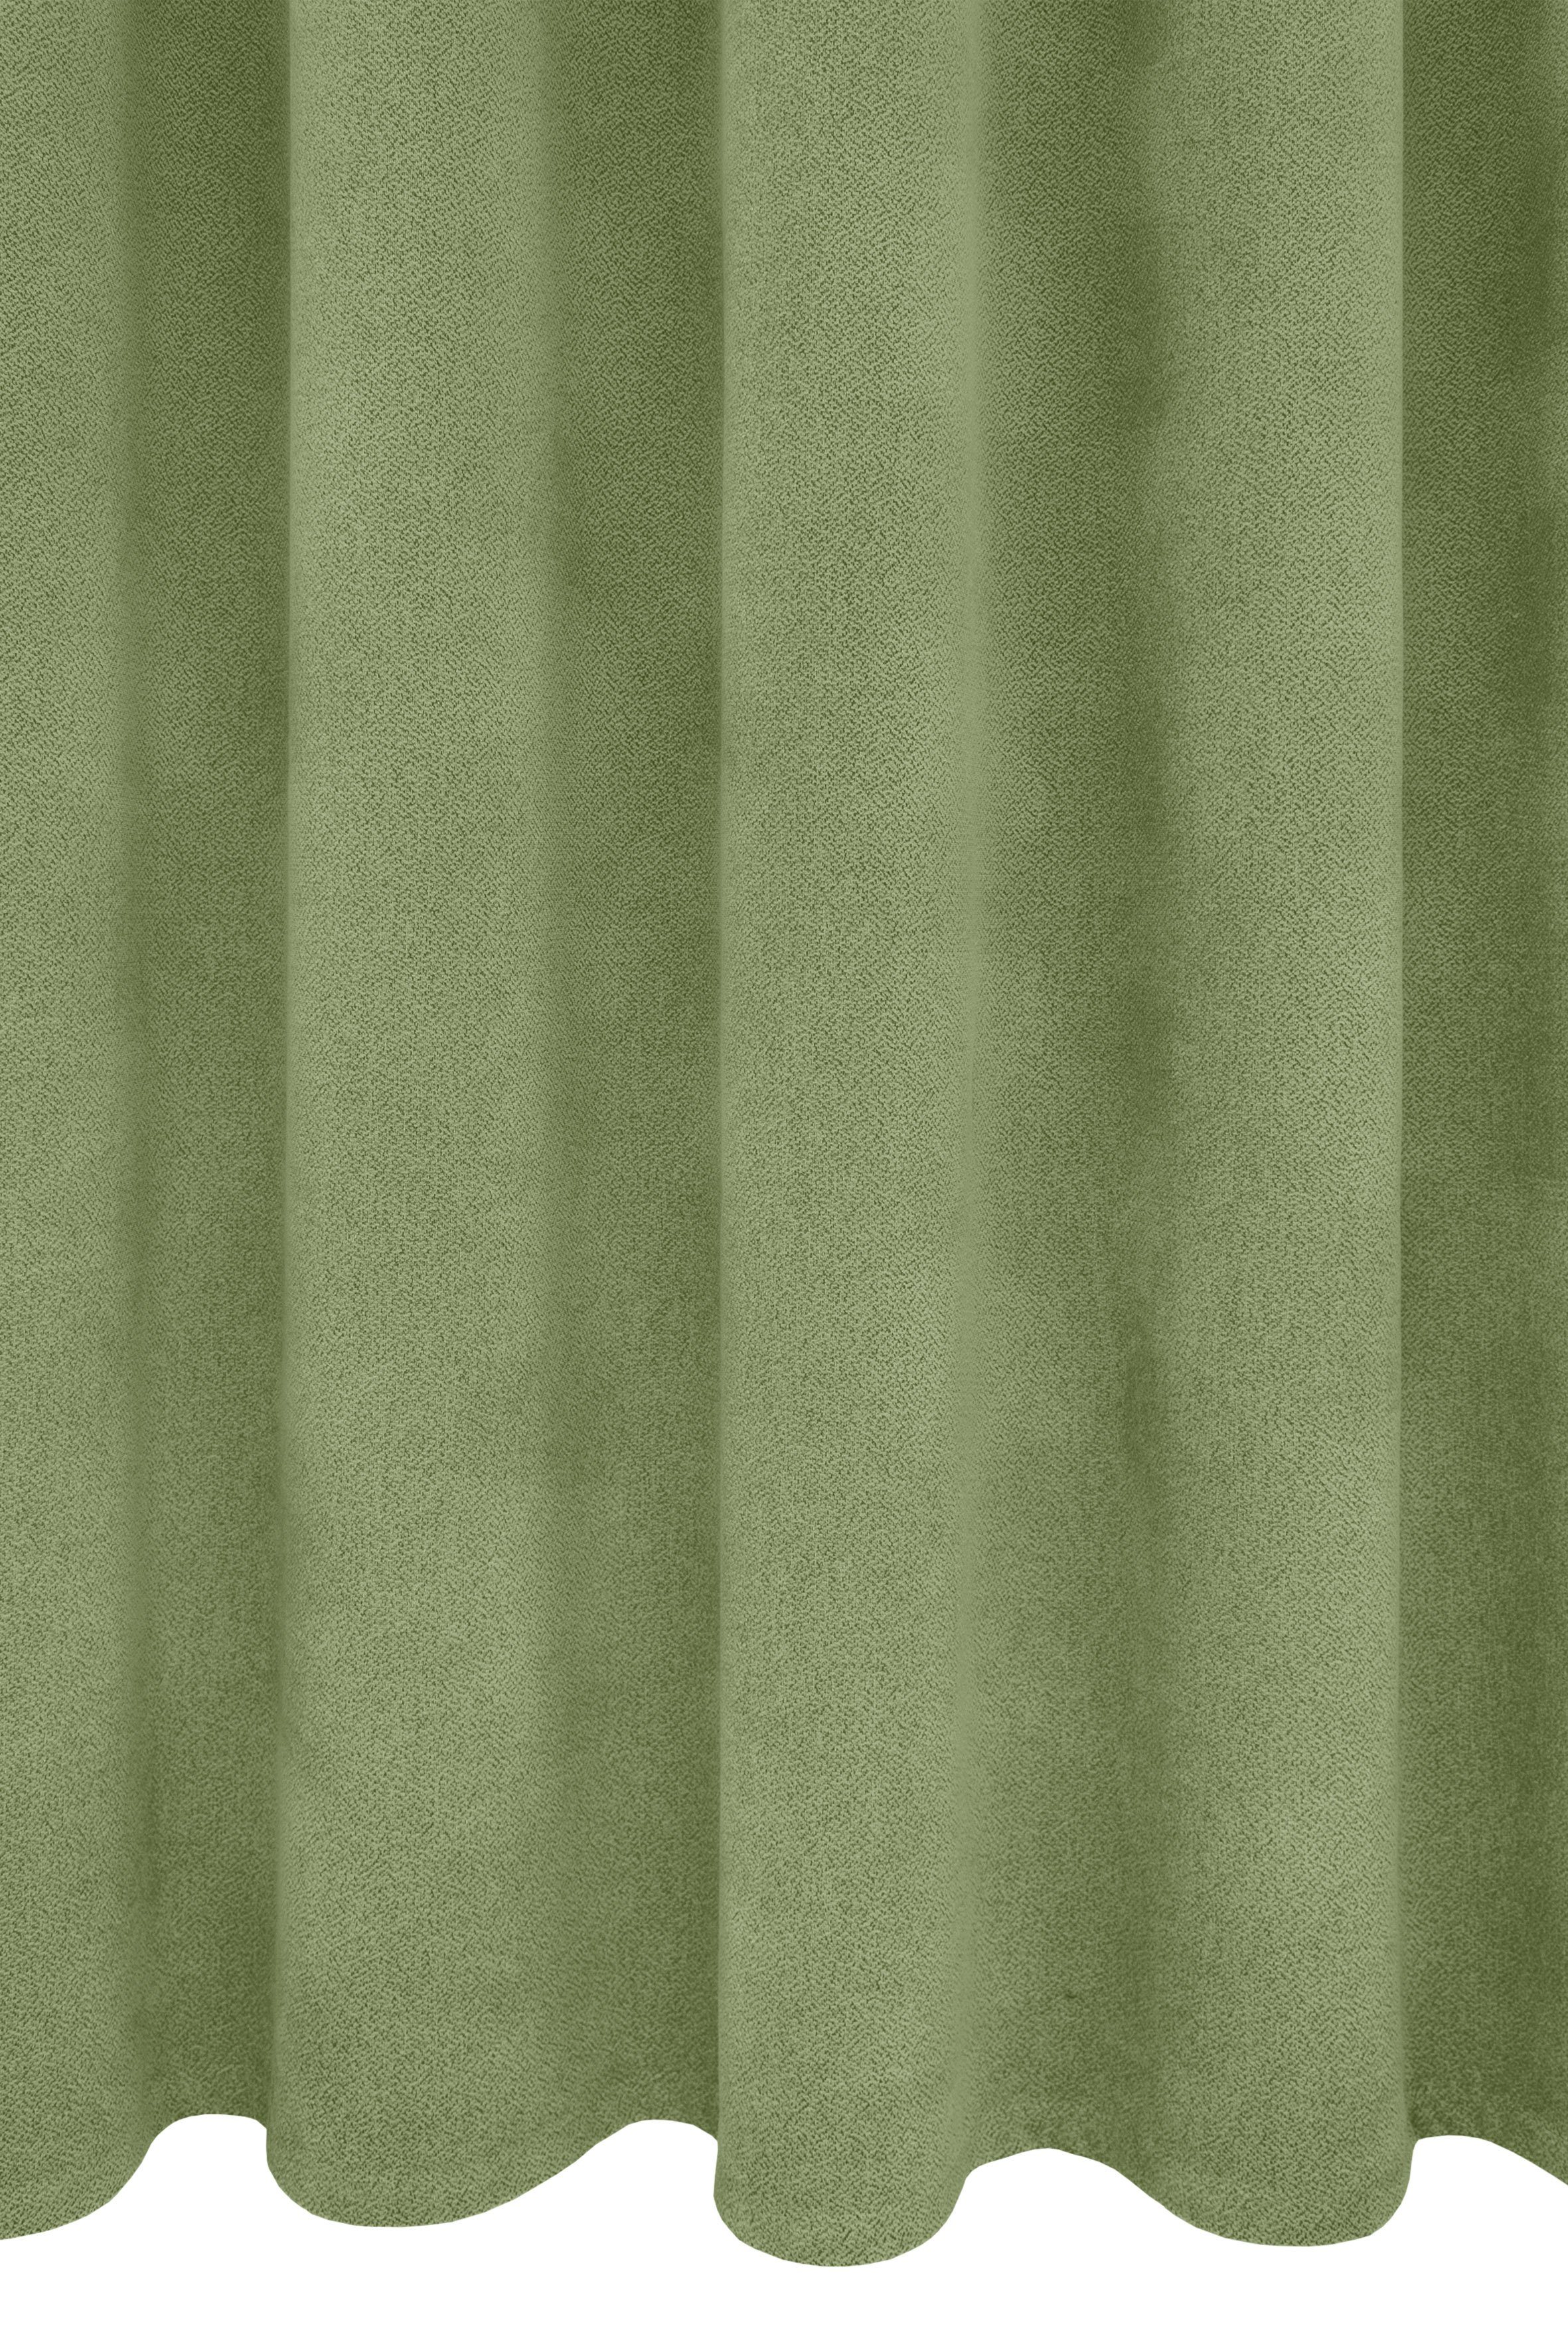 Vorhang Alea, VHG, Breite Kälteschutz, verdunkelnd, grün 415 145cm, Ösen sparend, Polyester, g/²m St), einfarbig, Energie (1 Wärmeschutz